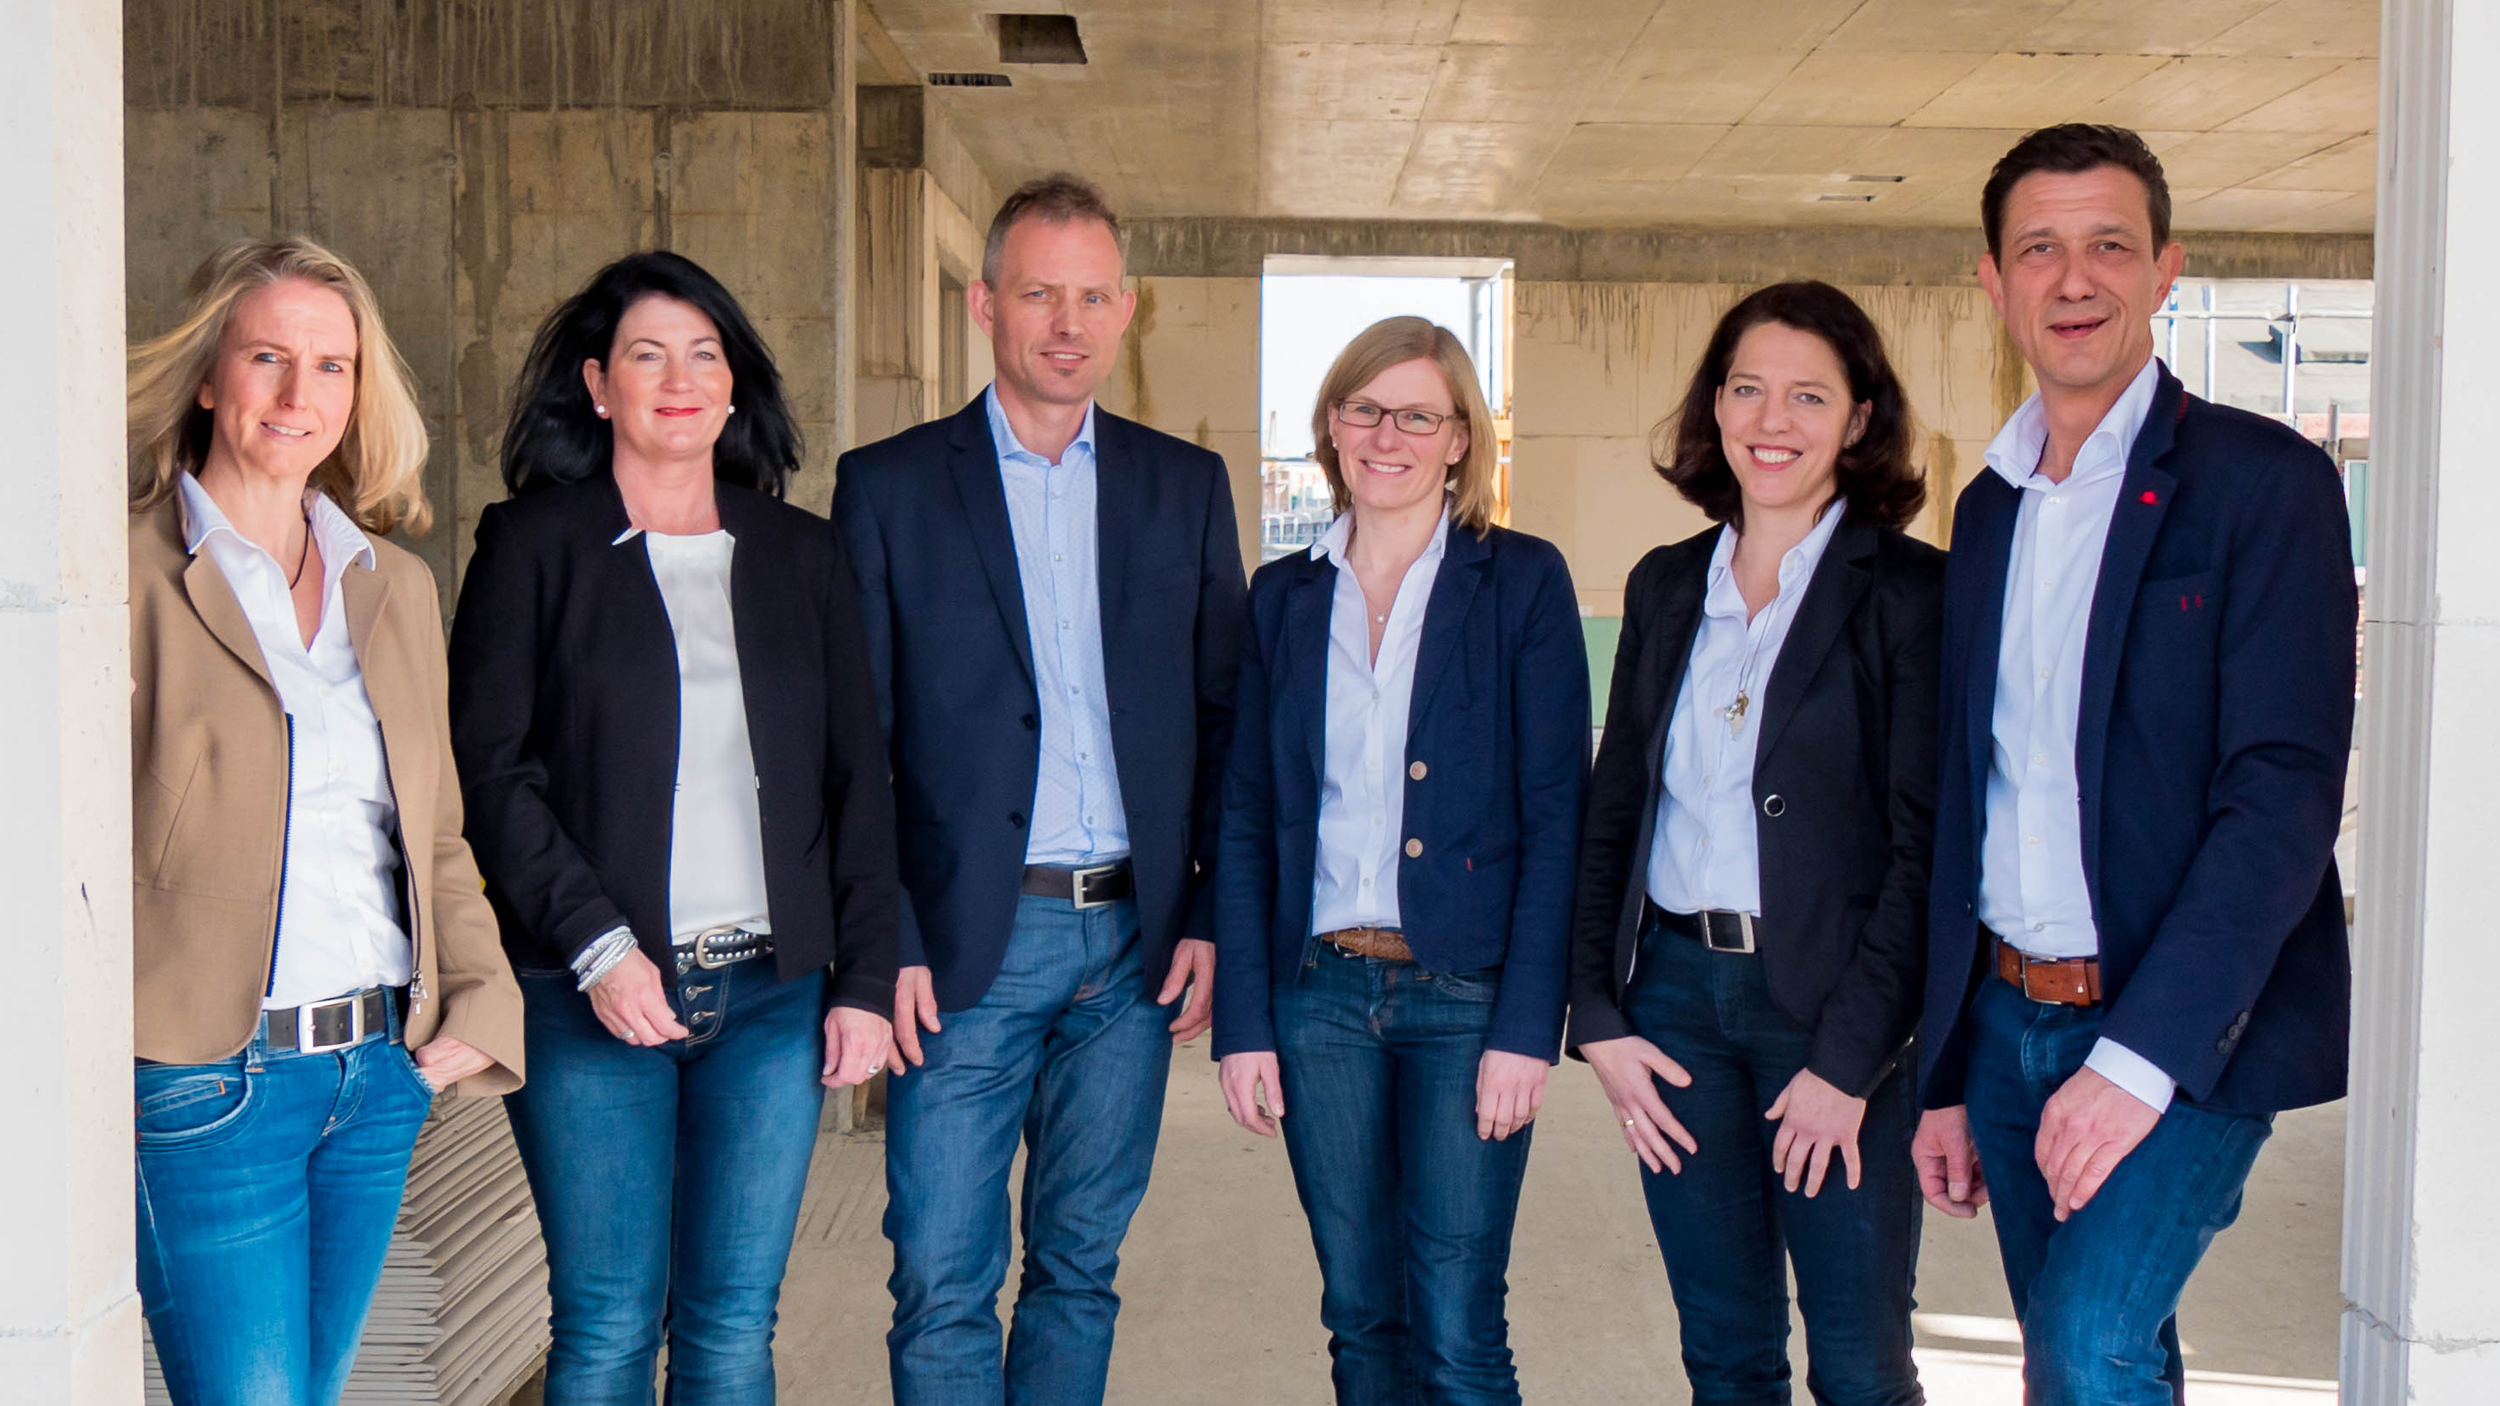 Die Mitarbeiterinnen und Mitarbeiter der Volksbank Immobilien GmbH: Simone Hüben, Anne Nelissen, Olaf Pauly, Andrea In der Smitten, Gabriele Krämer und Volker Kox.